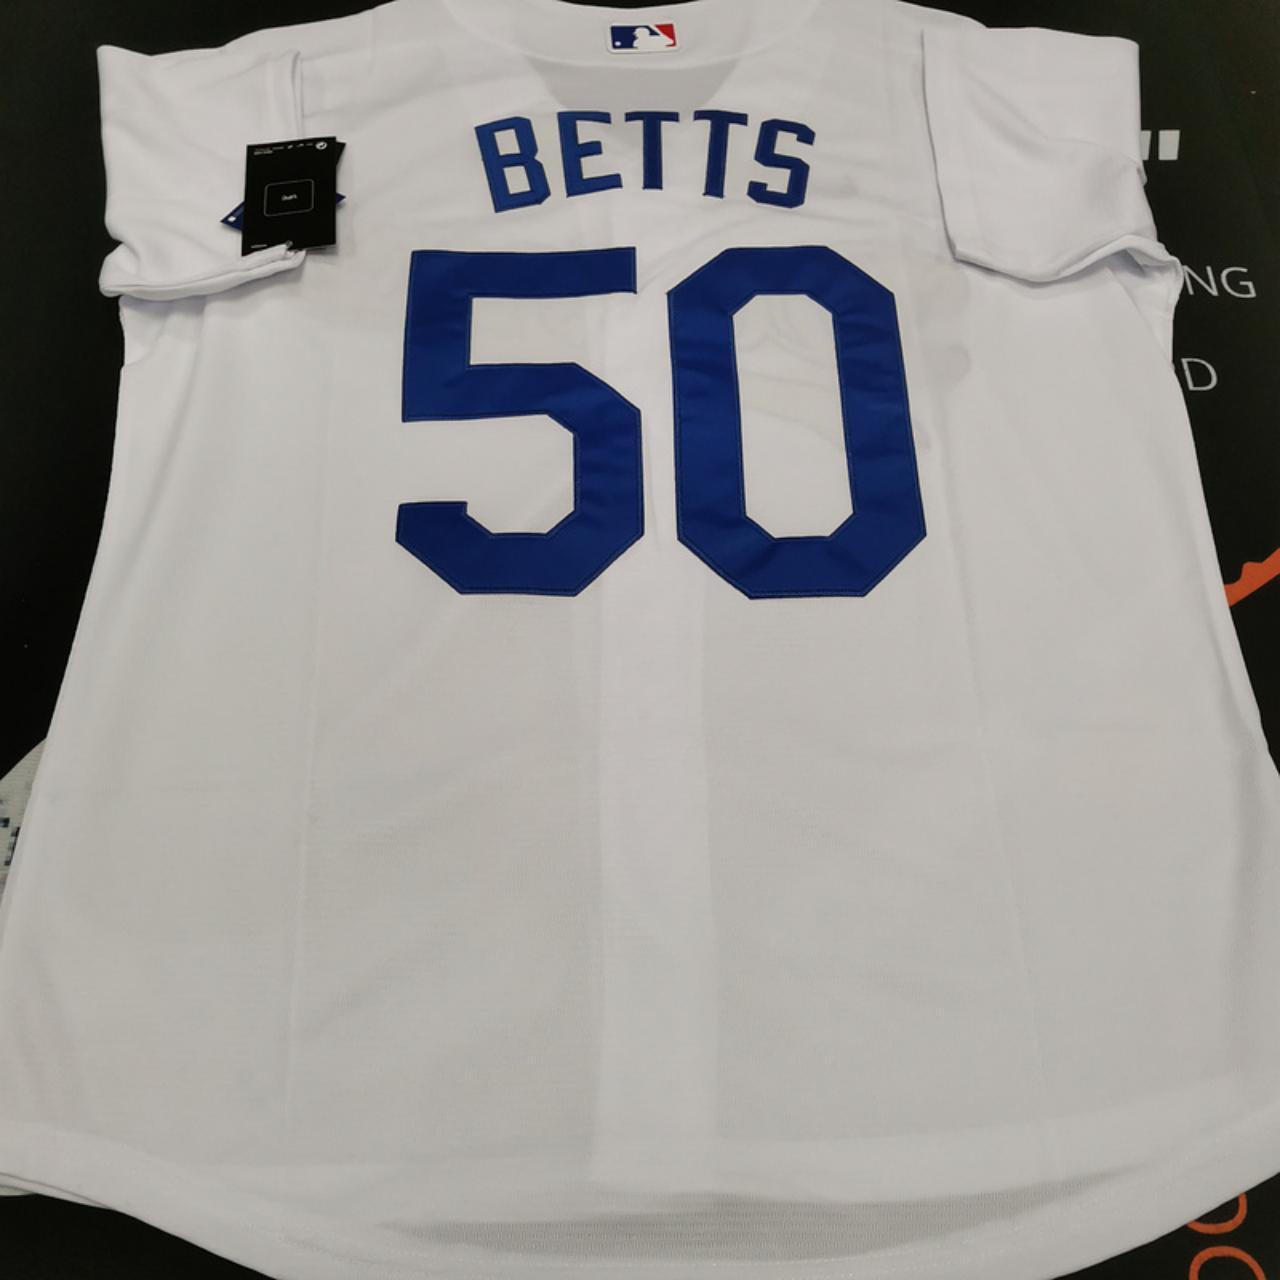 Mookie Betts Los Angeles Dodgers jerseys. Brand new, - Depop